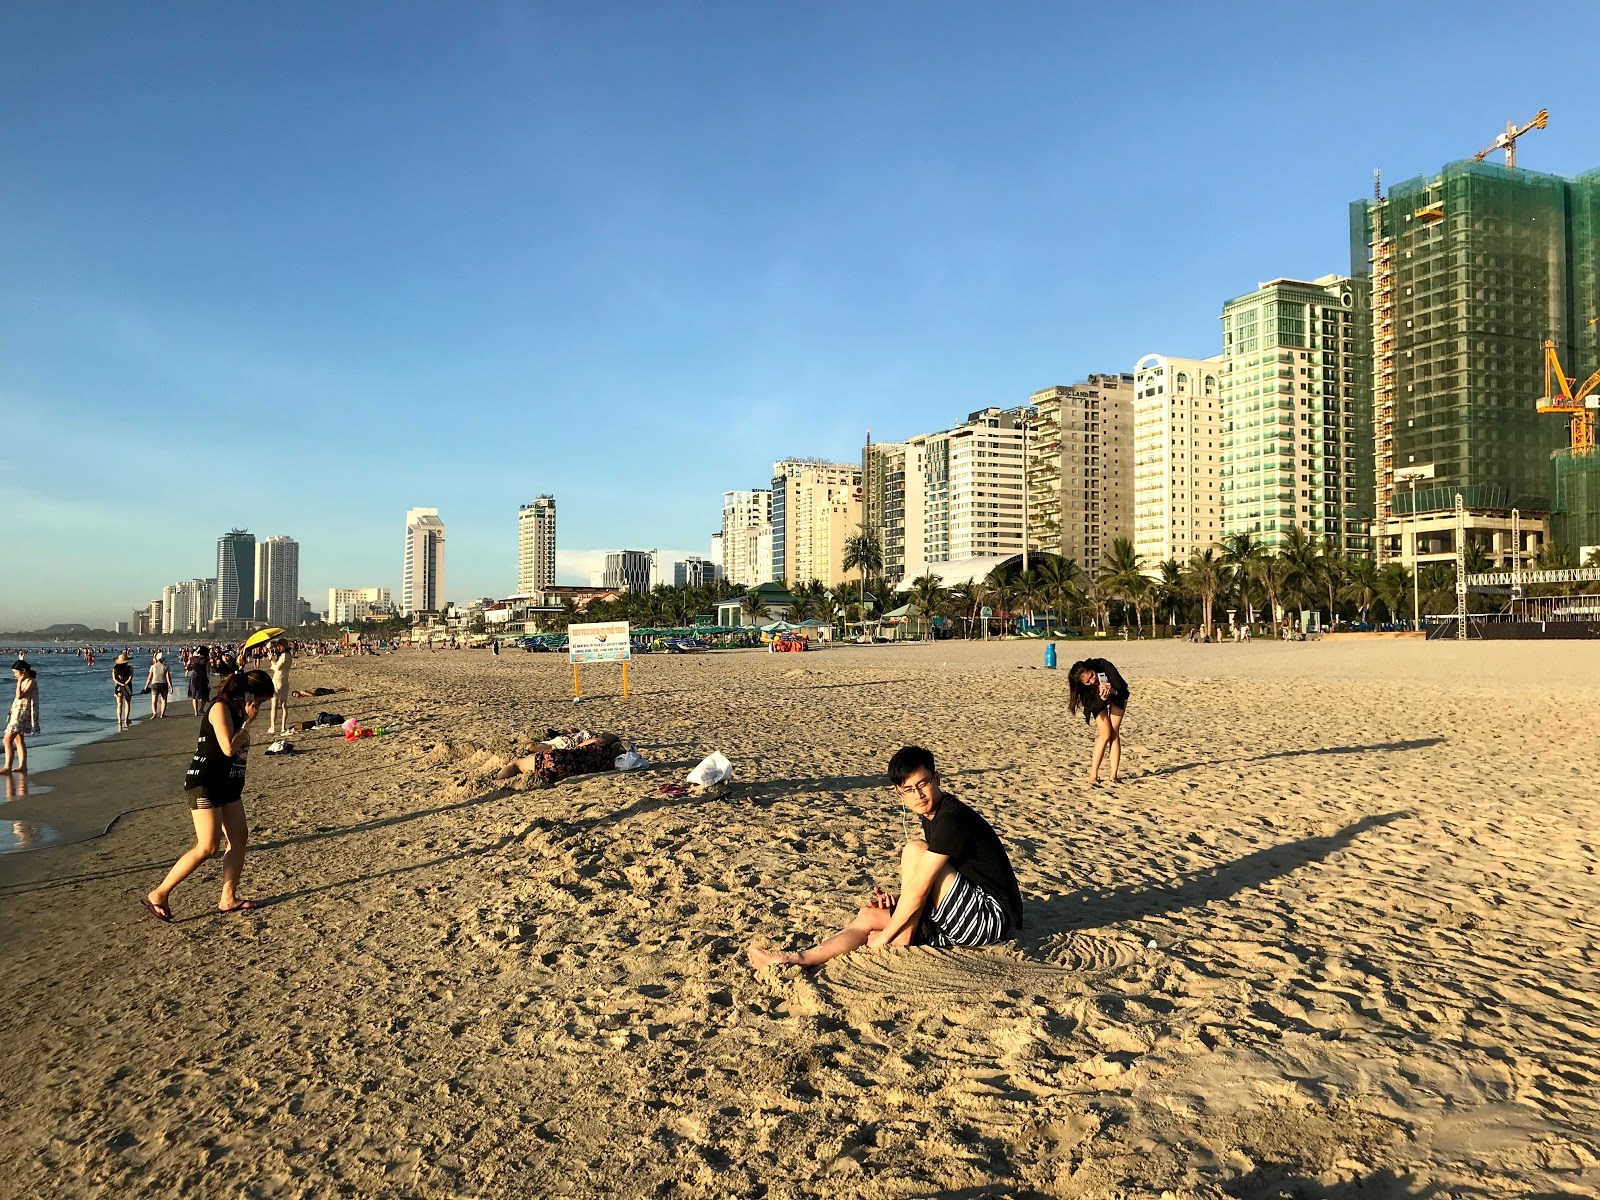 Foto de My Khe Beach - lugar popular entre los conocedores del relax